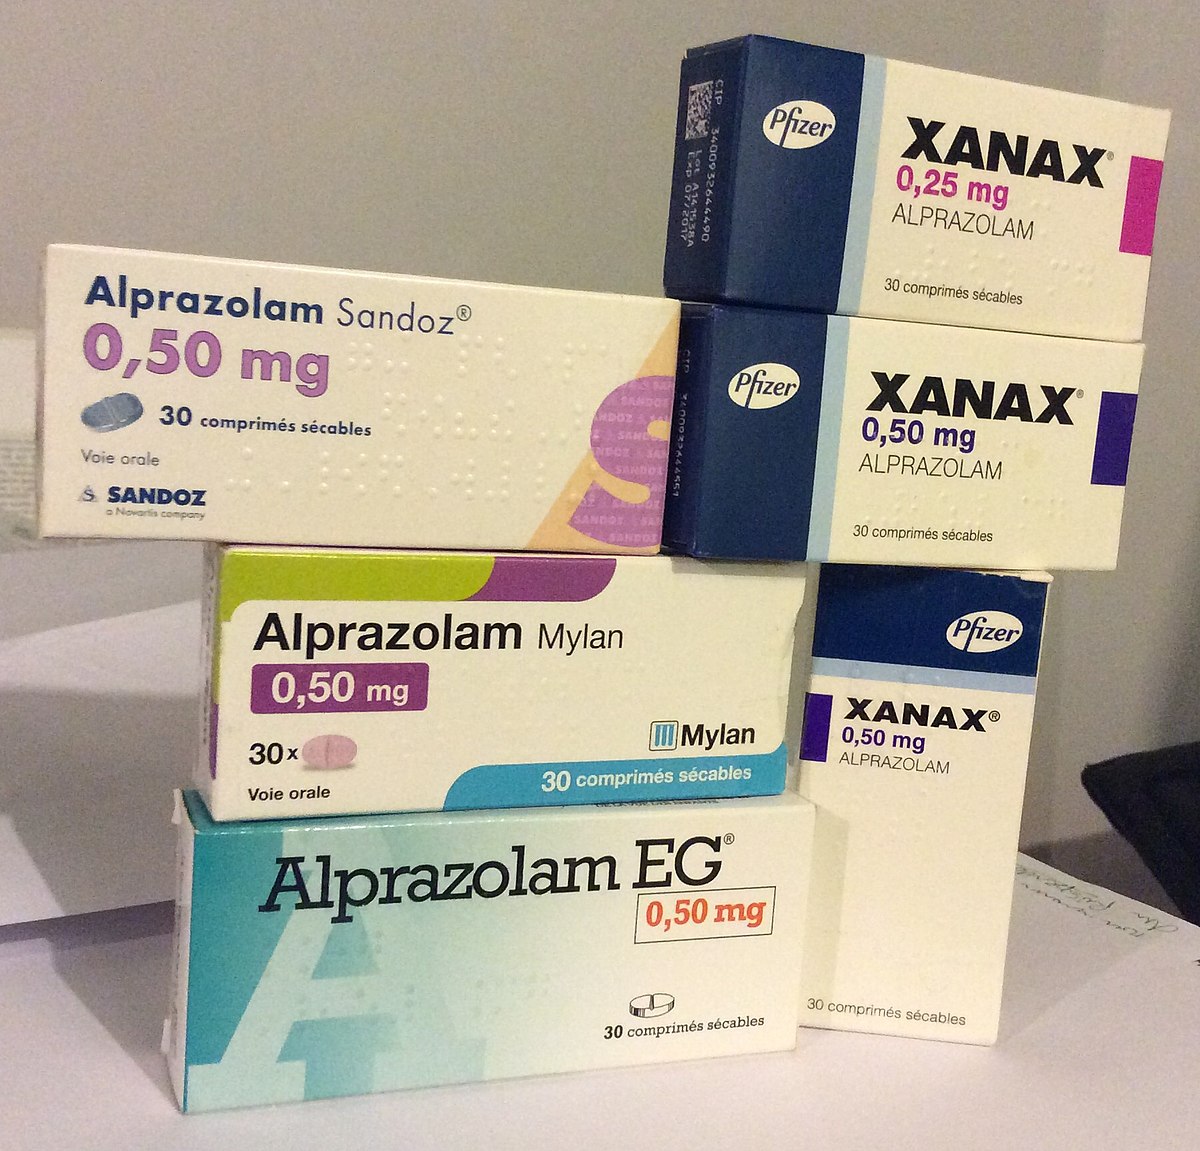 Dosage of Alprazolam